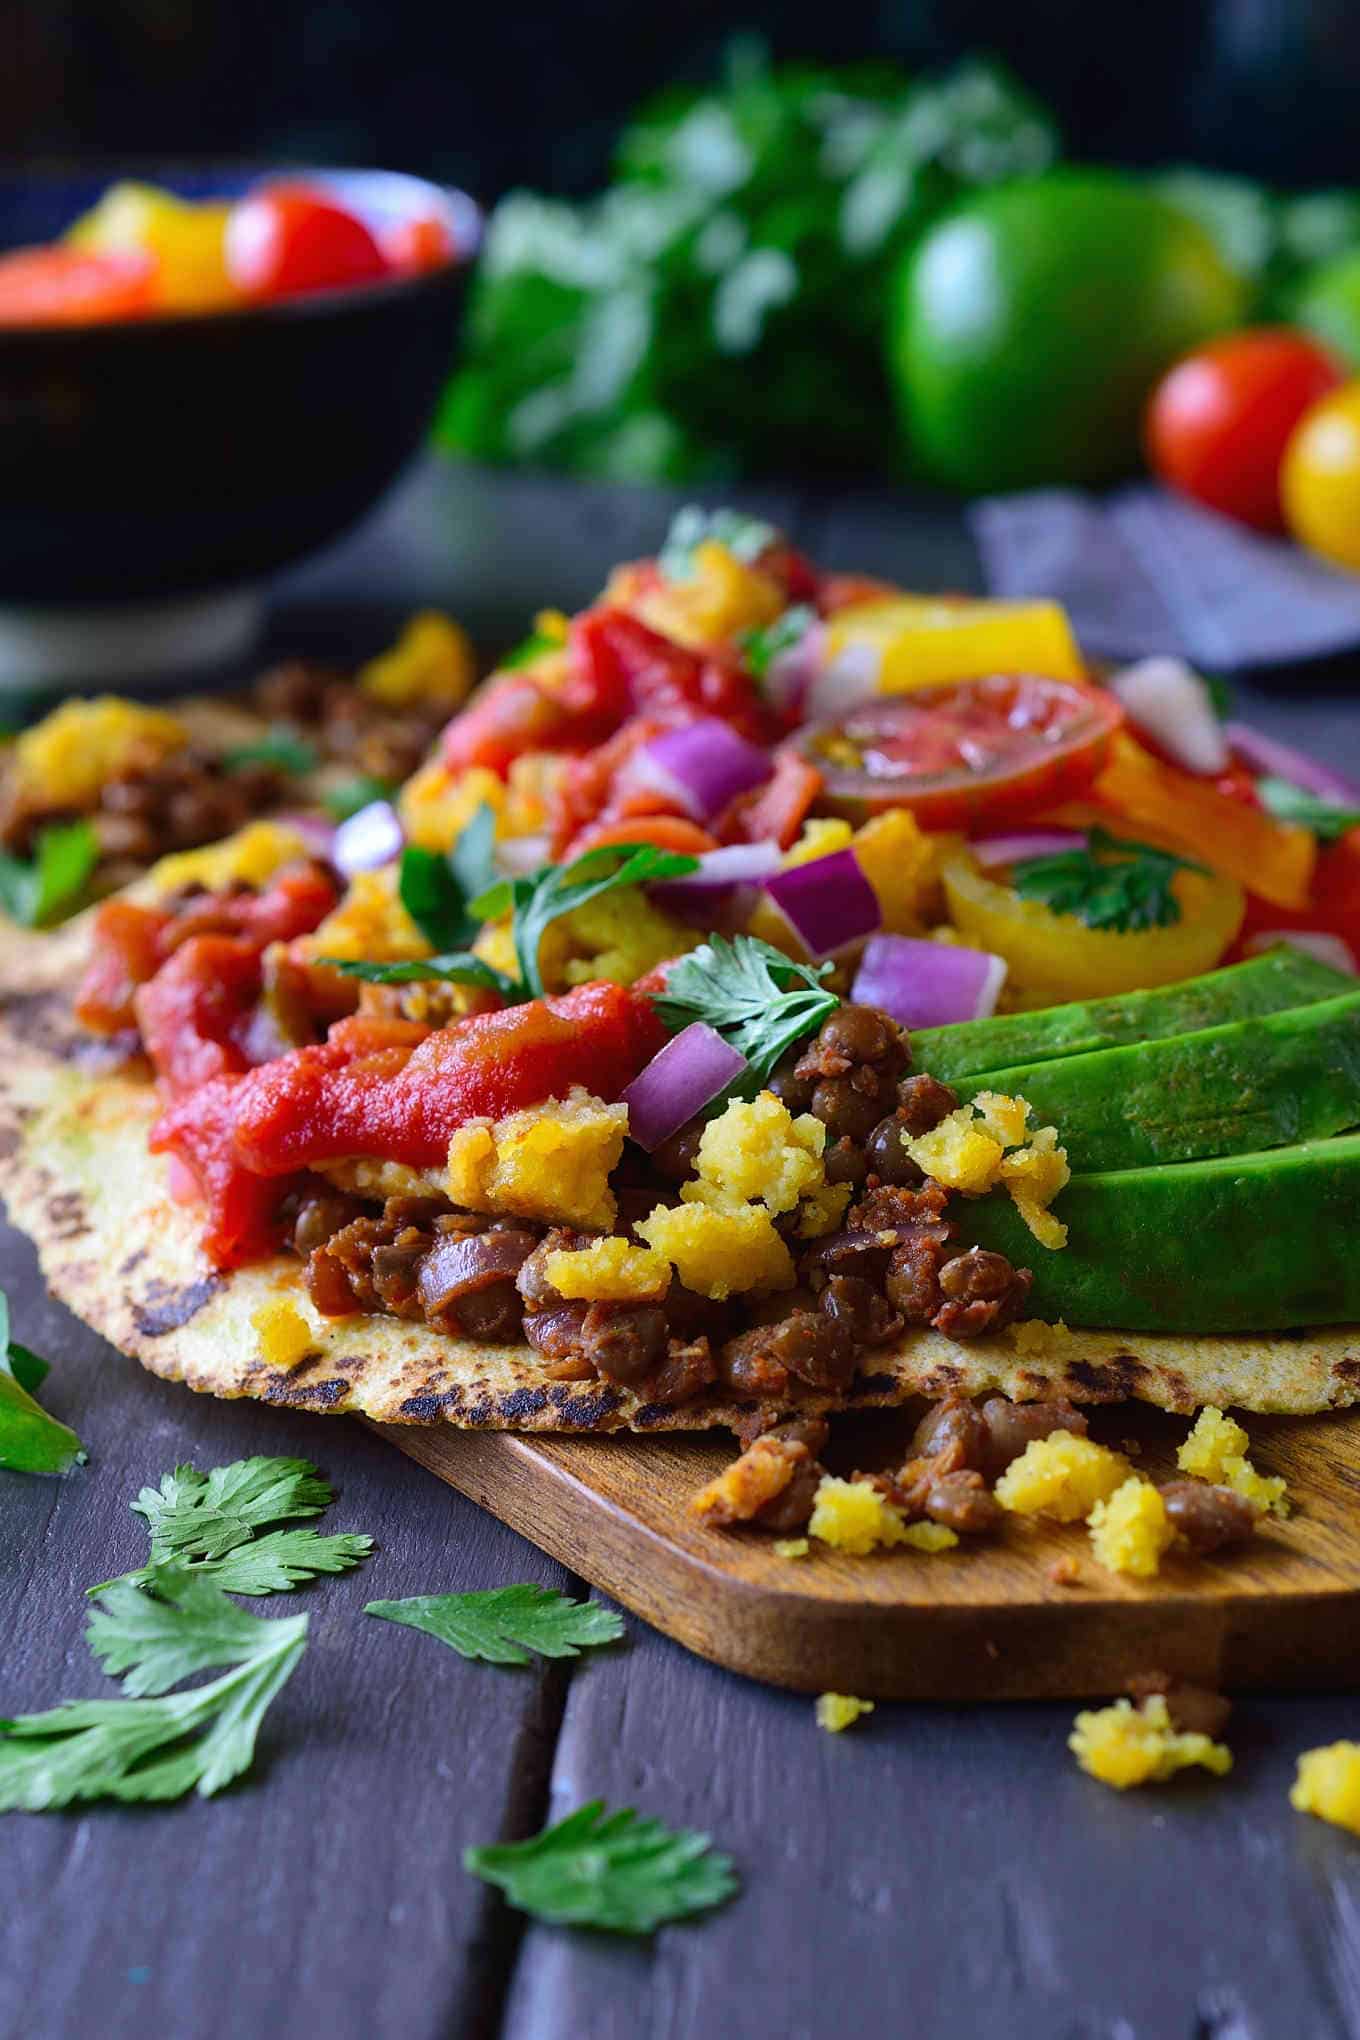 een open taco op een bord waarop de vulling van linzen, kikkererwtenmeel, ei, tomaten en avocado is aangegeven.